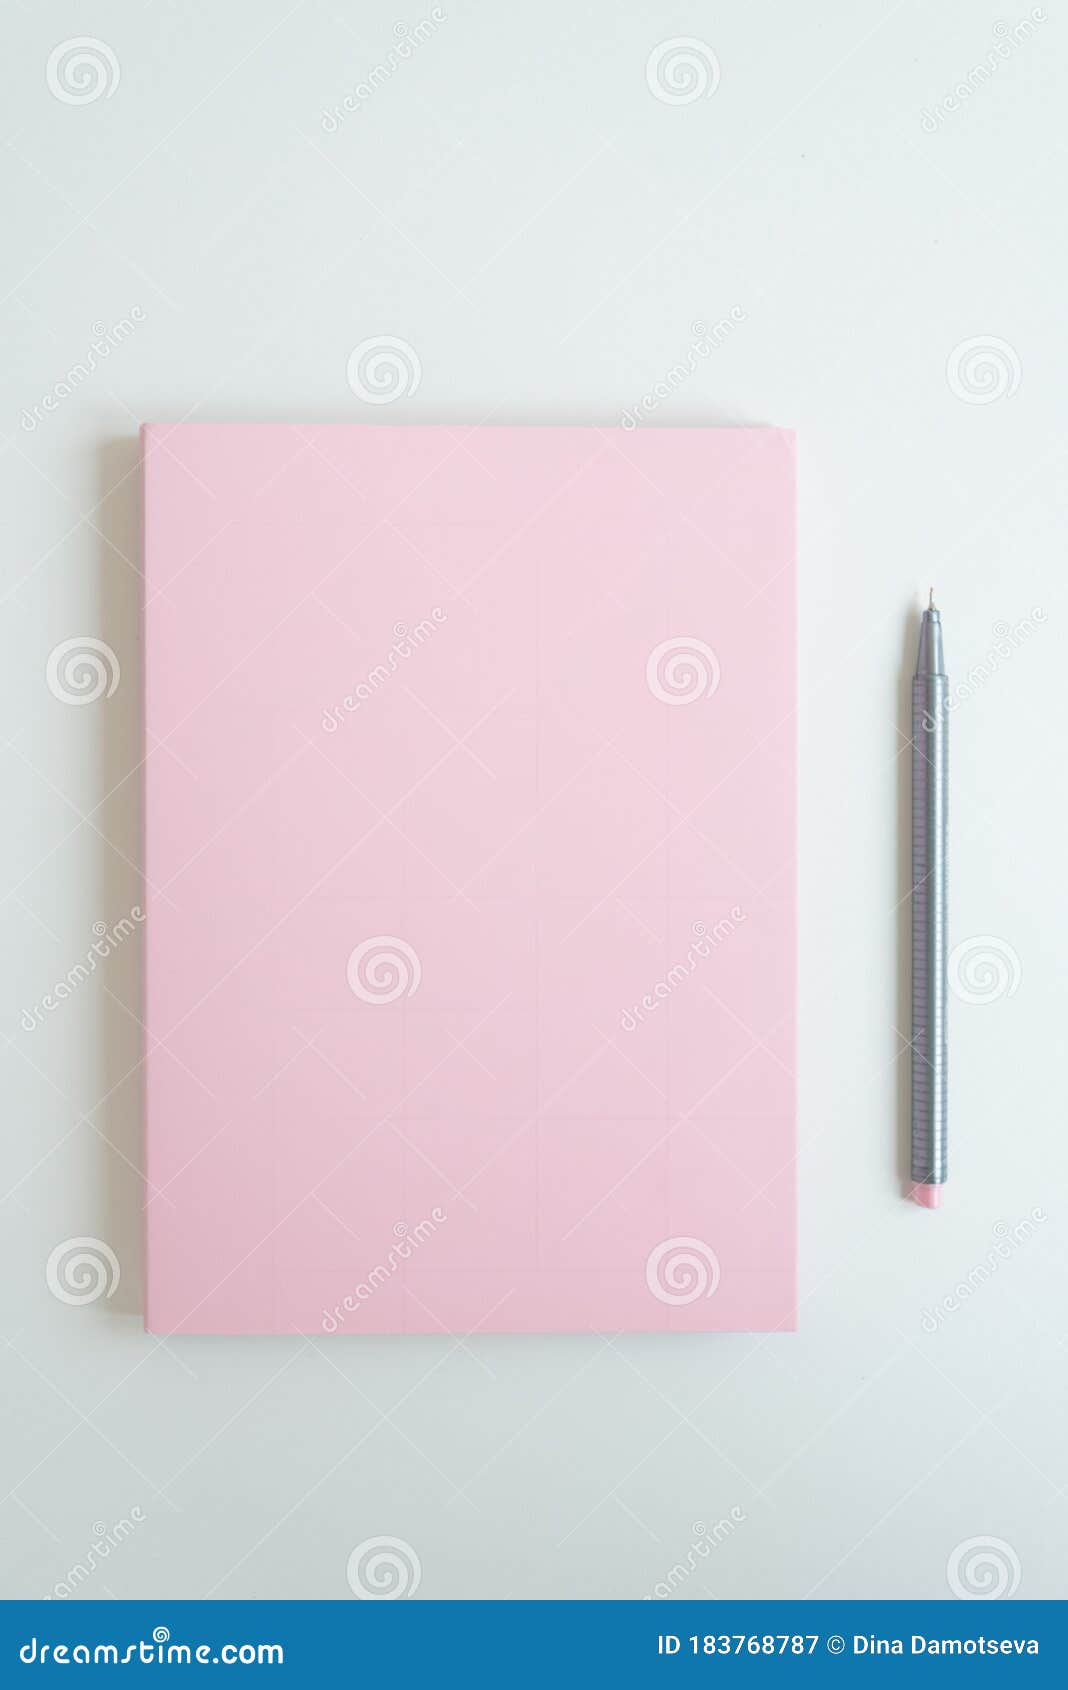 https://thumbs.dreamstime.com/z/sul-tavolo-c-%C3%A8-un-diario-segreto-di-una-ragazza-la-copertina-del-notebook-colore-rosa-delicato-accanto-essa-penna-per-scrivere-183768787.jpg